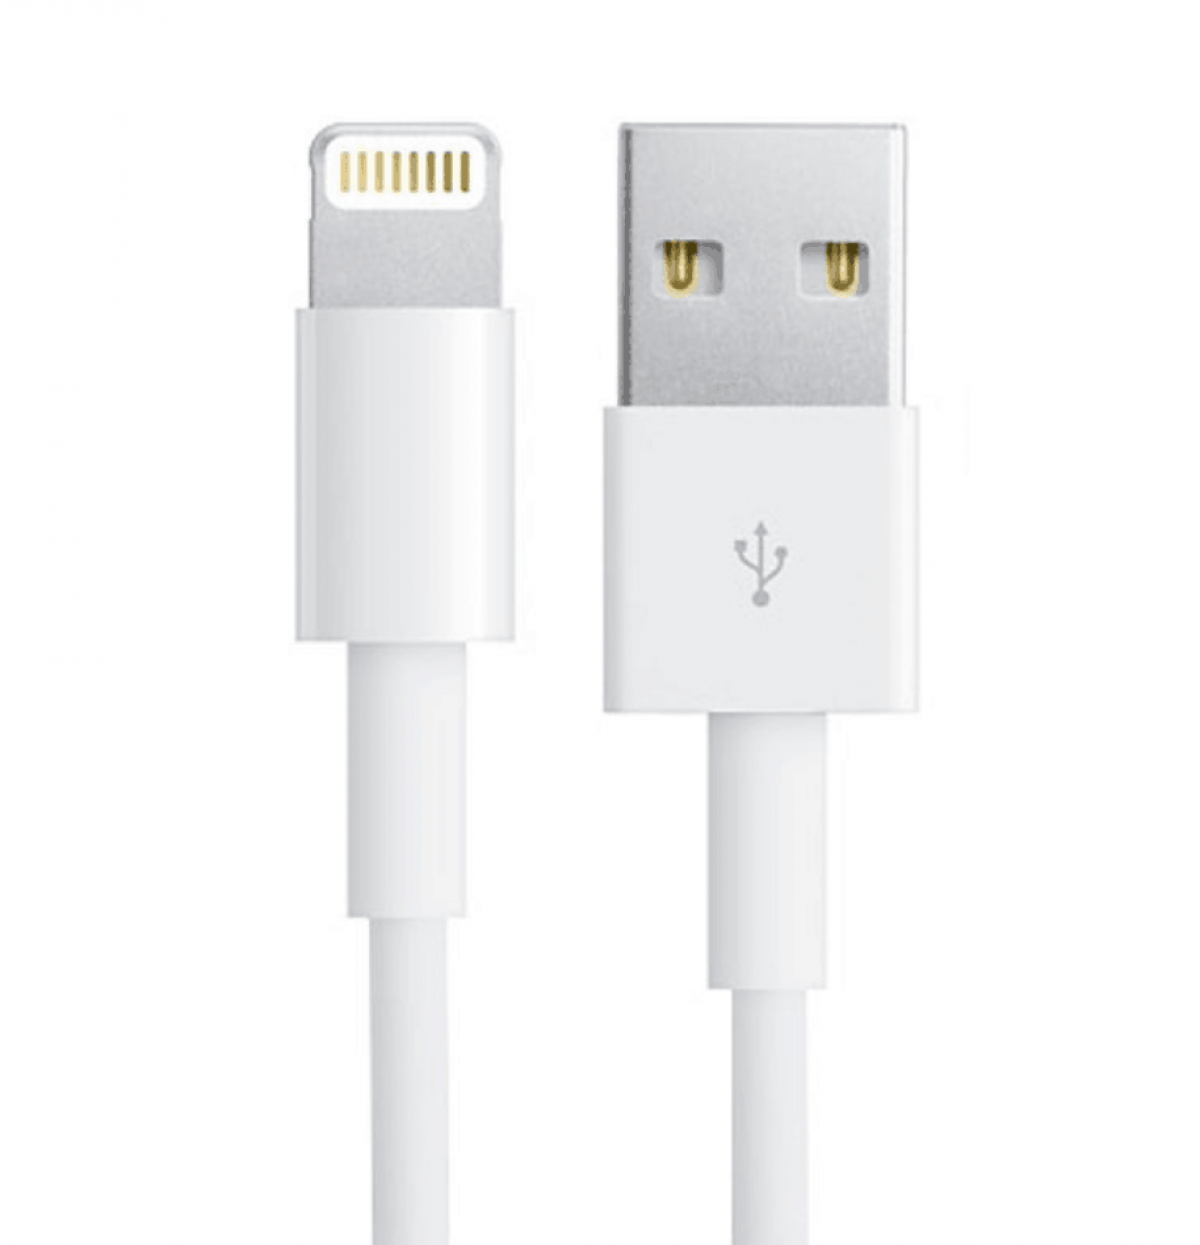 Кабели для iphone ipad ipod. Apple кабель USB/Lightning 1 м. Кабель Apple Lightning 8-Pin MFI USB белый 1 м. Кабель Apple USB-Lightning, 2м, белый (md819zm/a). Кабель юсб Лайтинг для айфона.